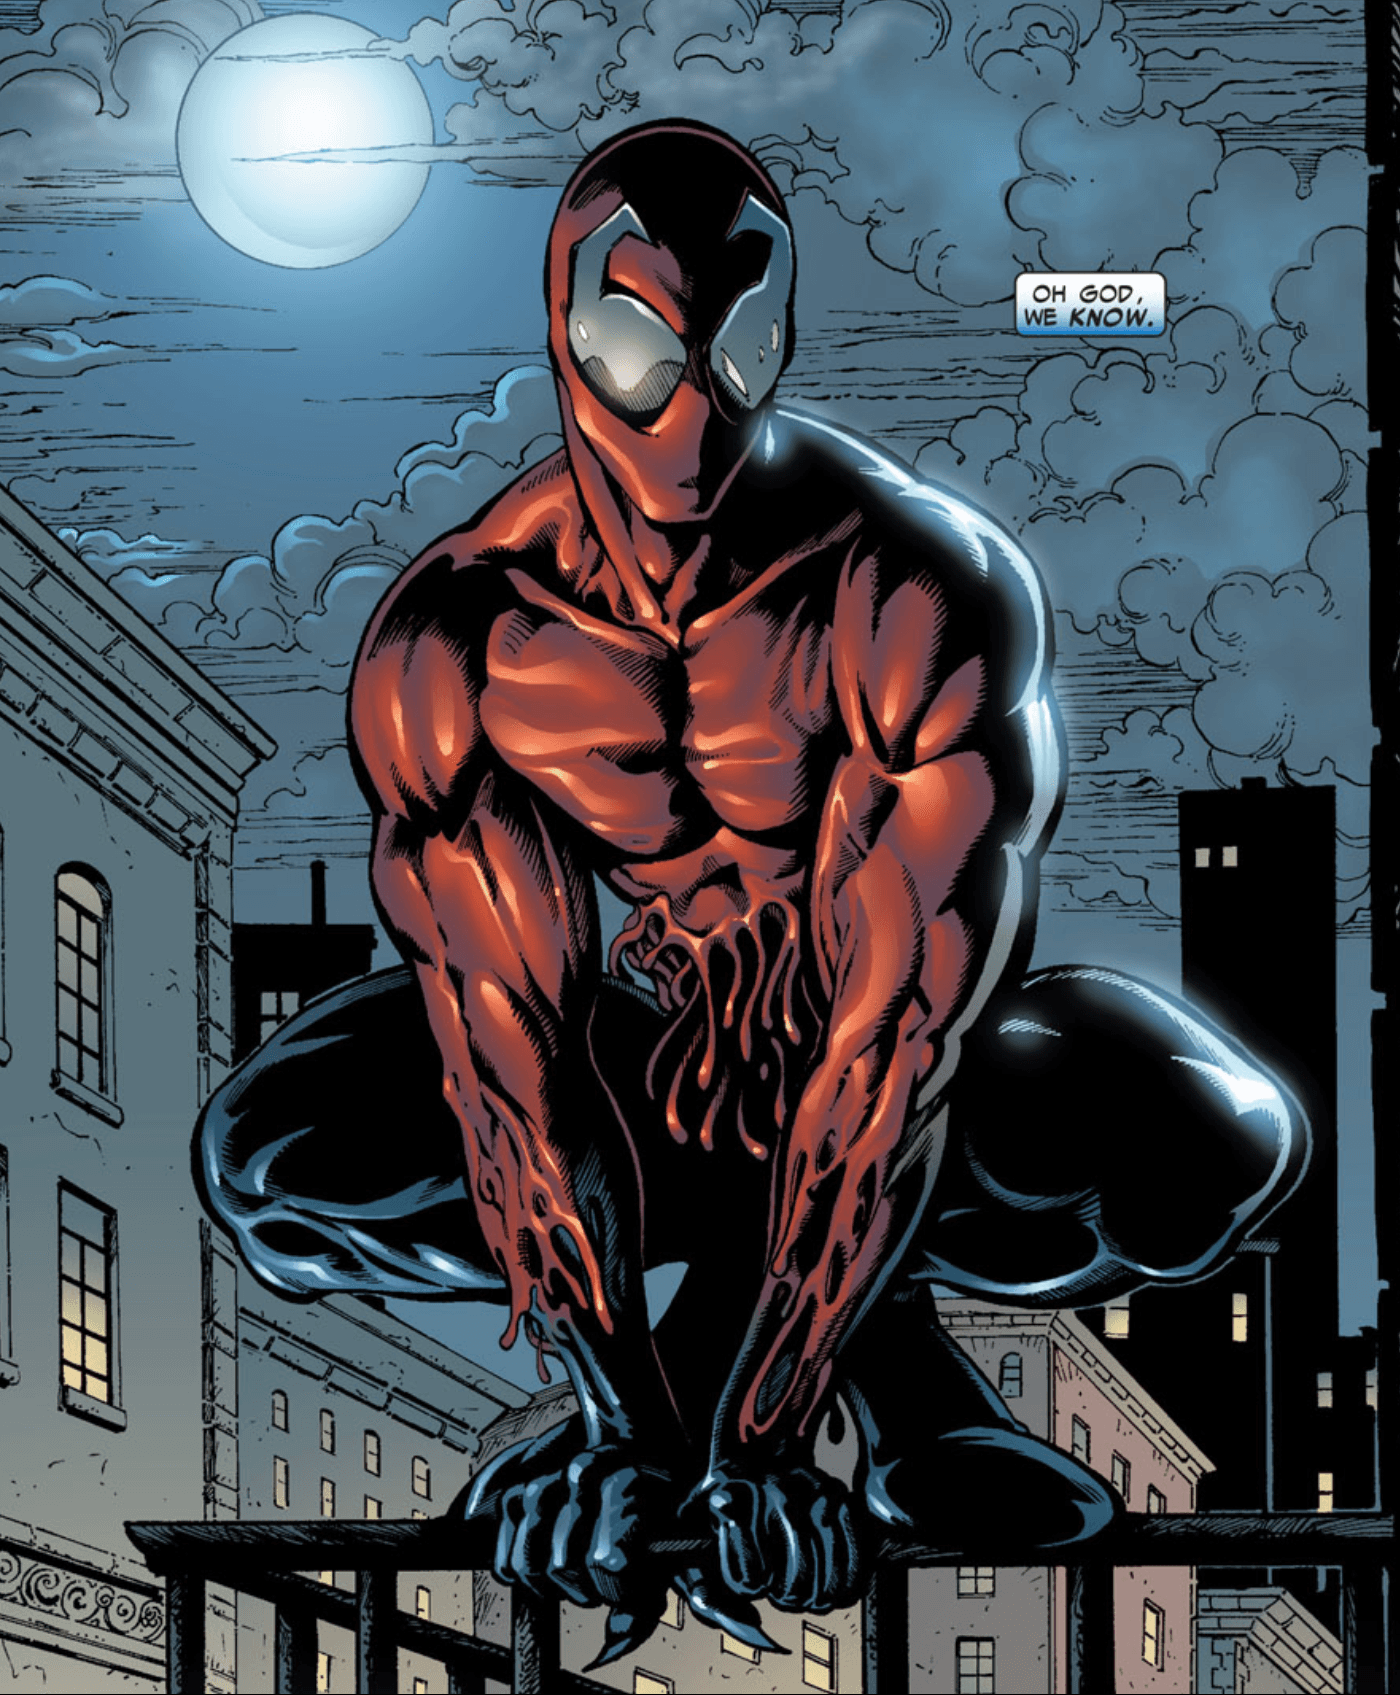 Venom - Spider-Man: Separation Anxiety - Metacritic